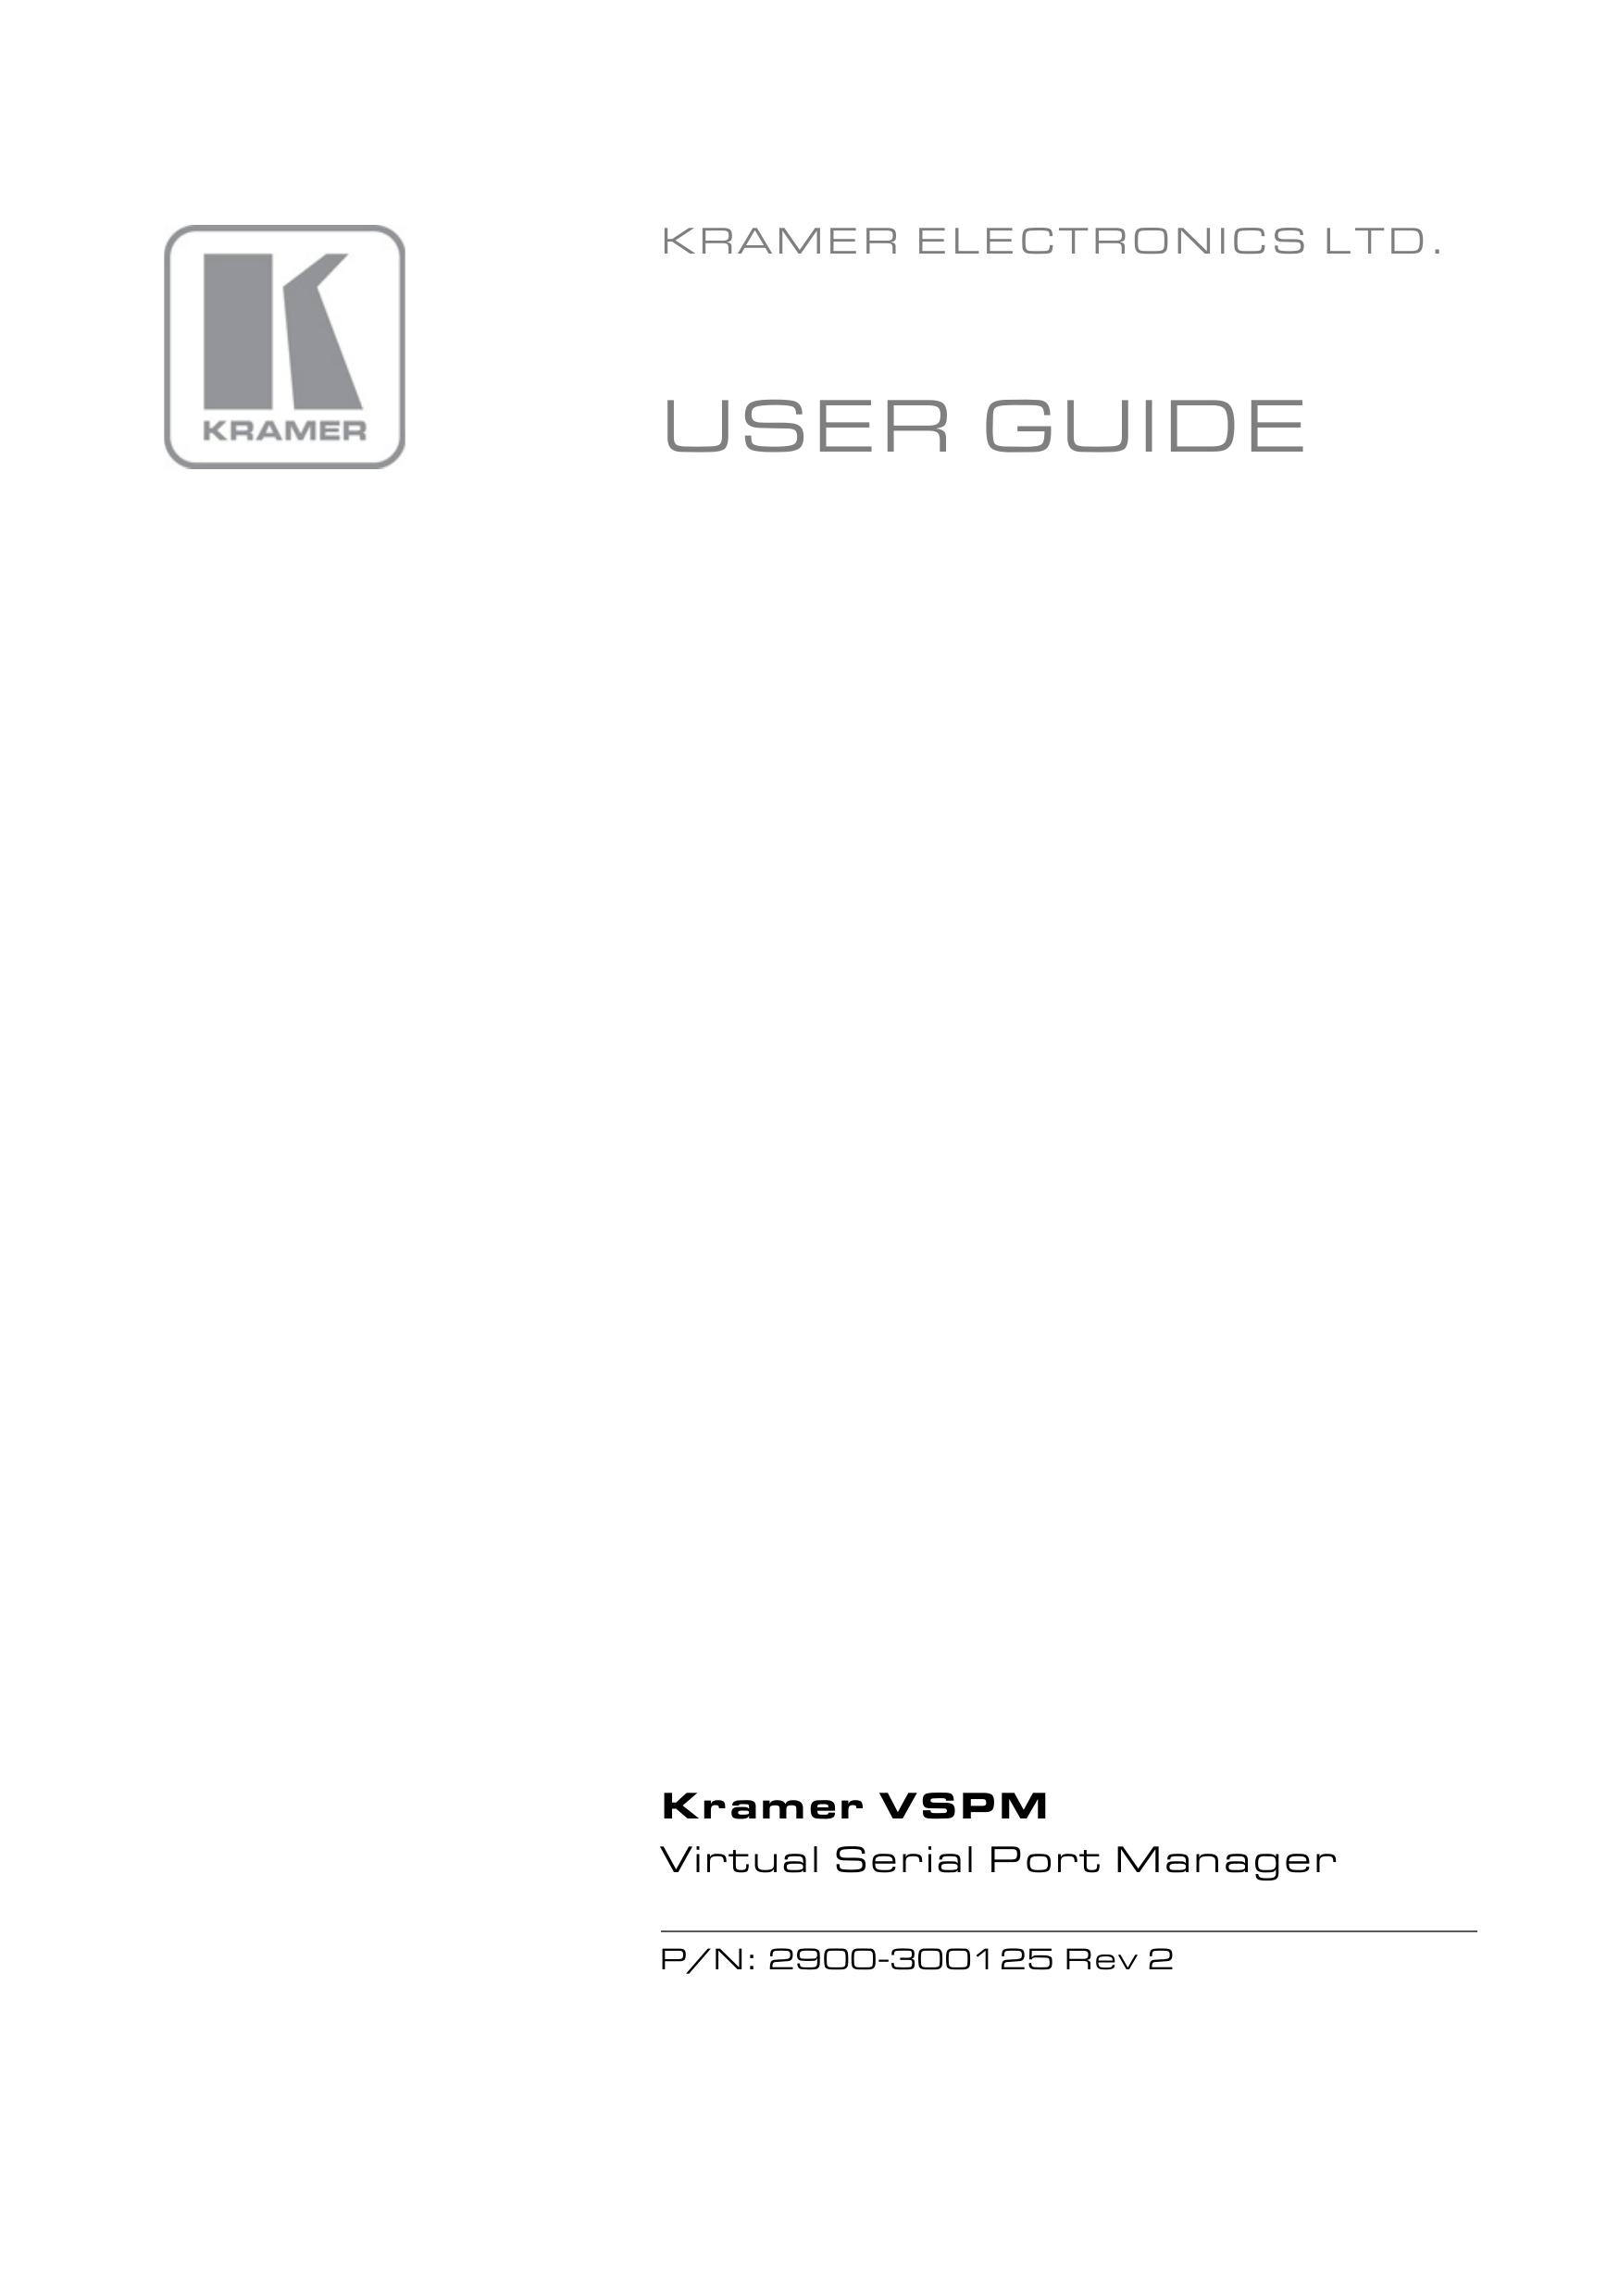 Kramer Electronics N: 2900-300125 Rev 2 Wheelchair User Manual